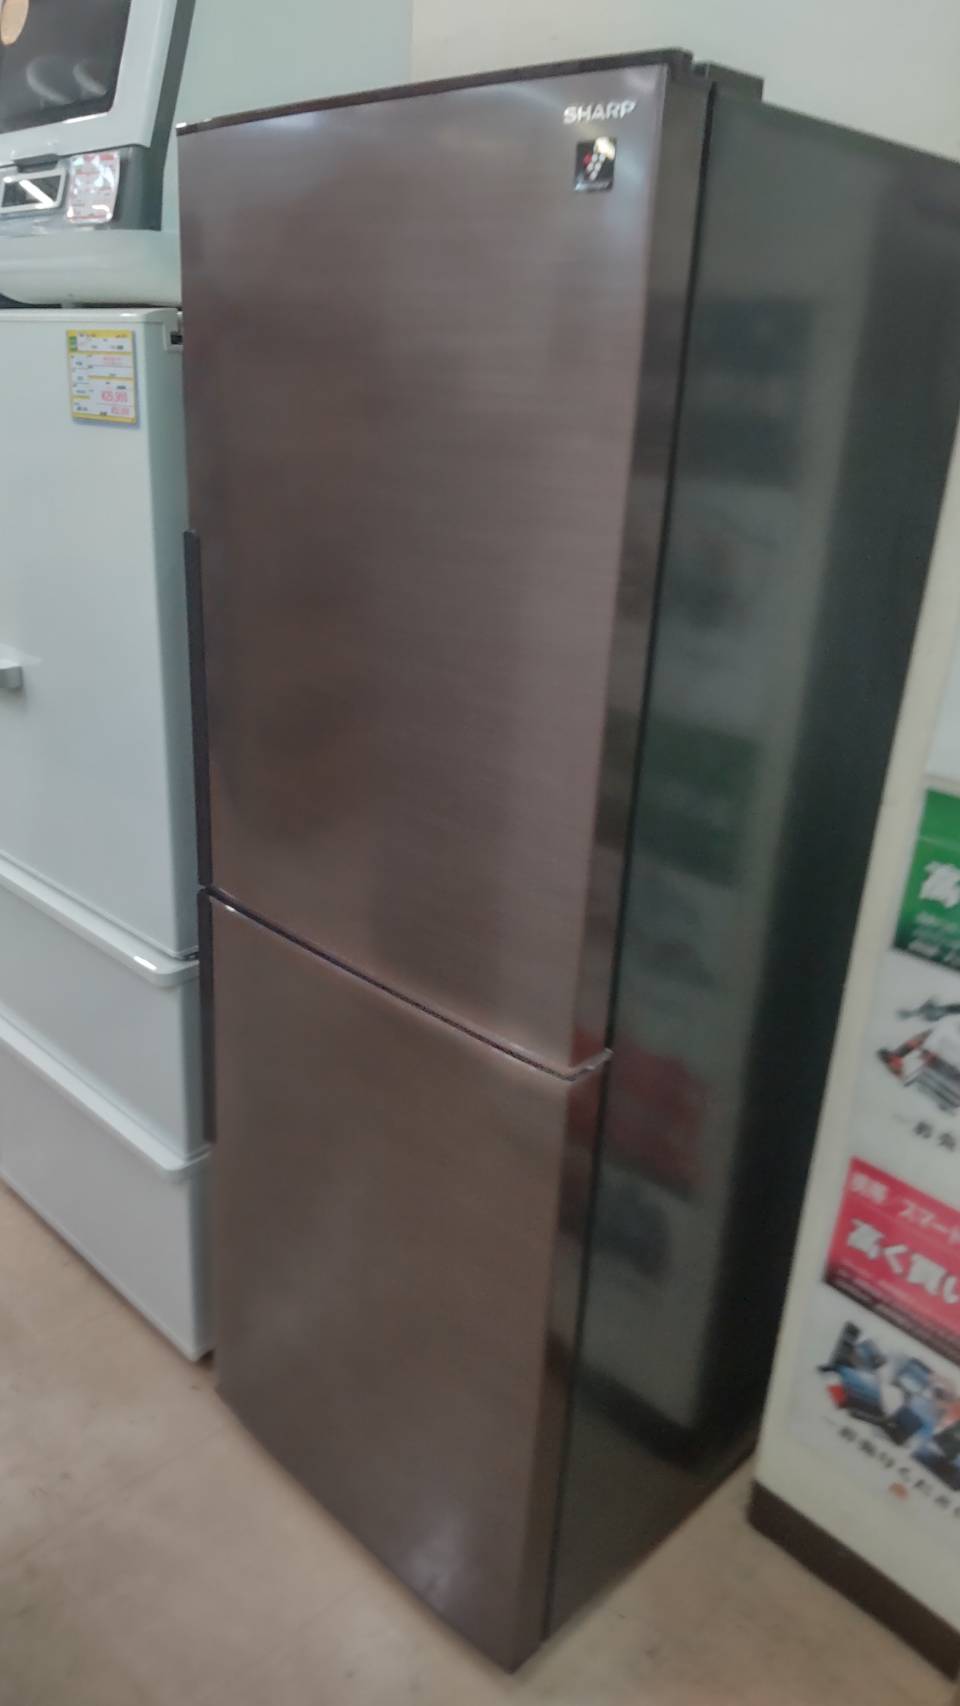 【✨SHARP シャープ 280L 冷蔵庫 SJ-PD28F 2020年 プラズマクラスター搭載 ✨】を買取させて頂きました！✨大型冷蔵庫買取致します！ぜひお売り下さい！！！✨ - リサイクルマートは現在冷蔵庫の買取、家具の買取強化中です！お気軽にお問い合わせください。